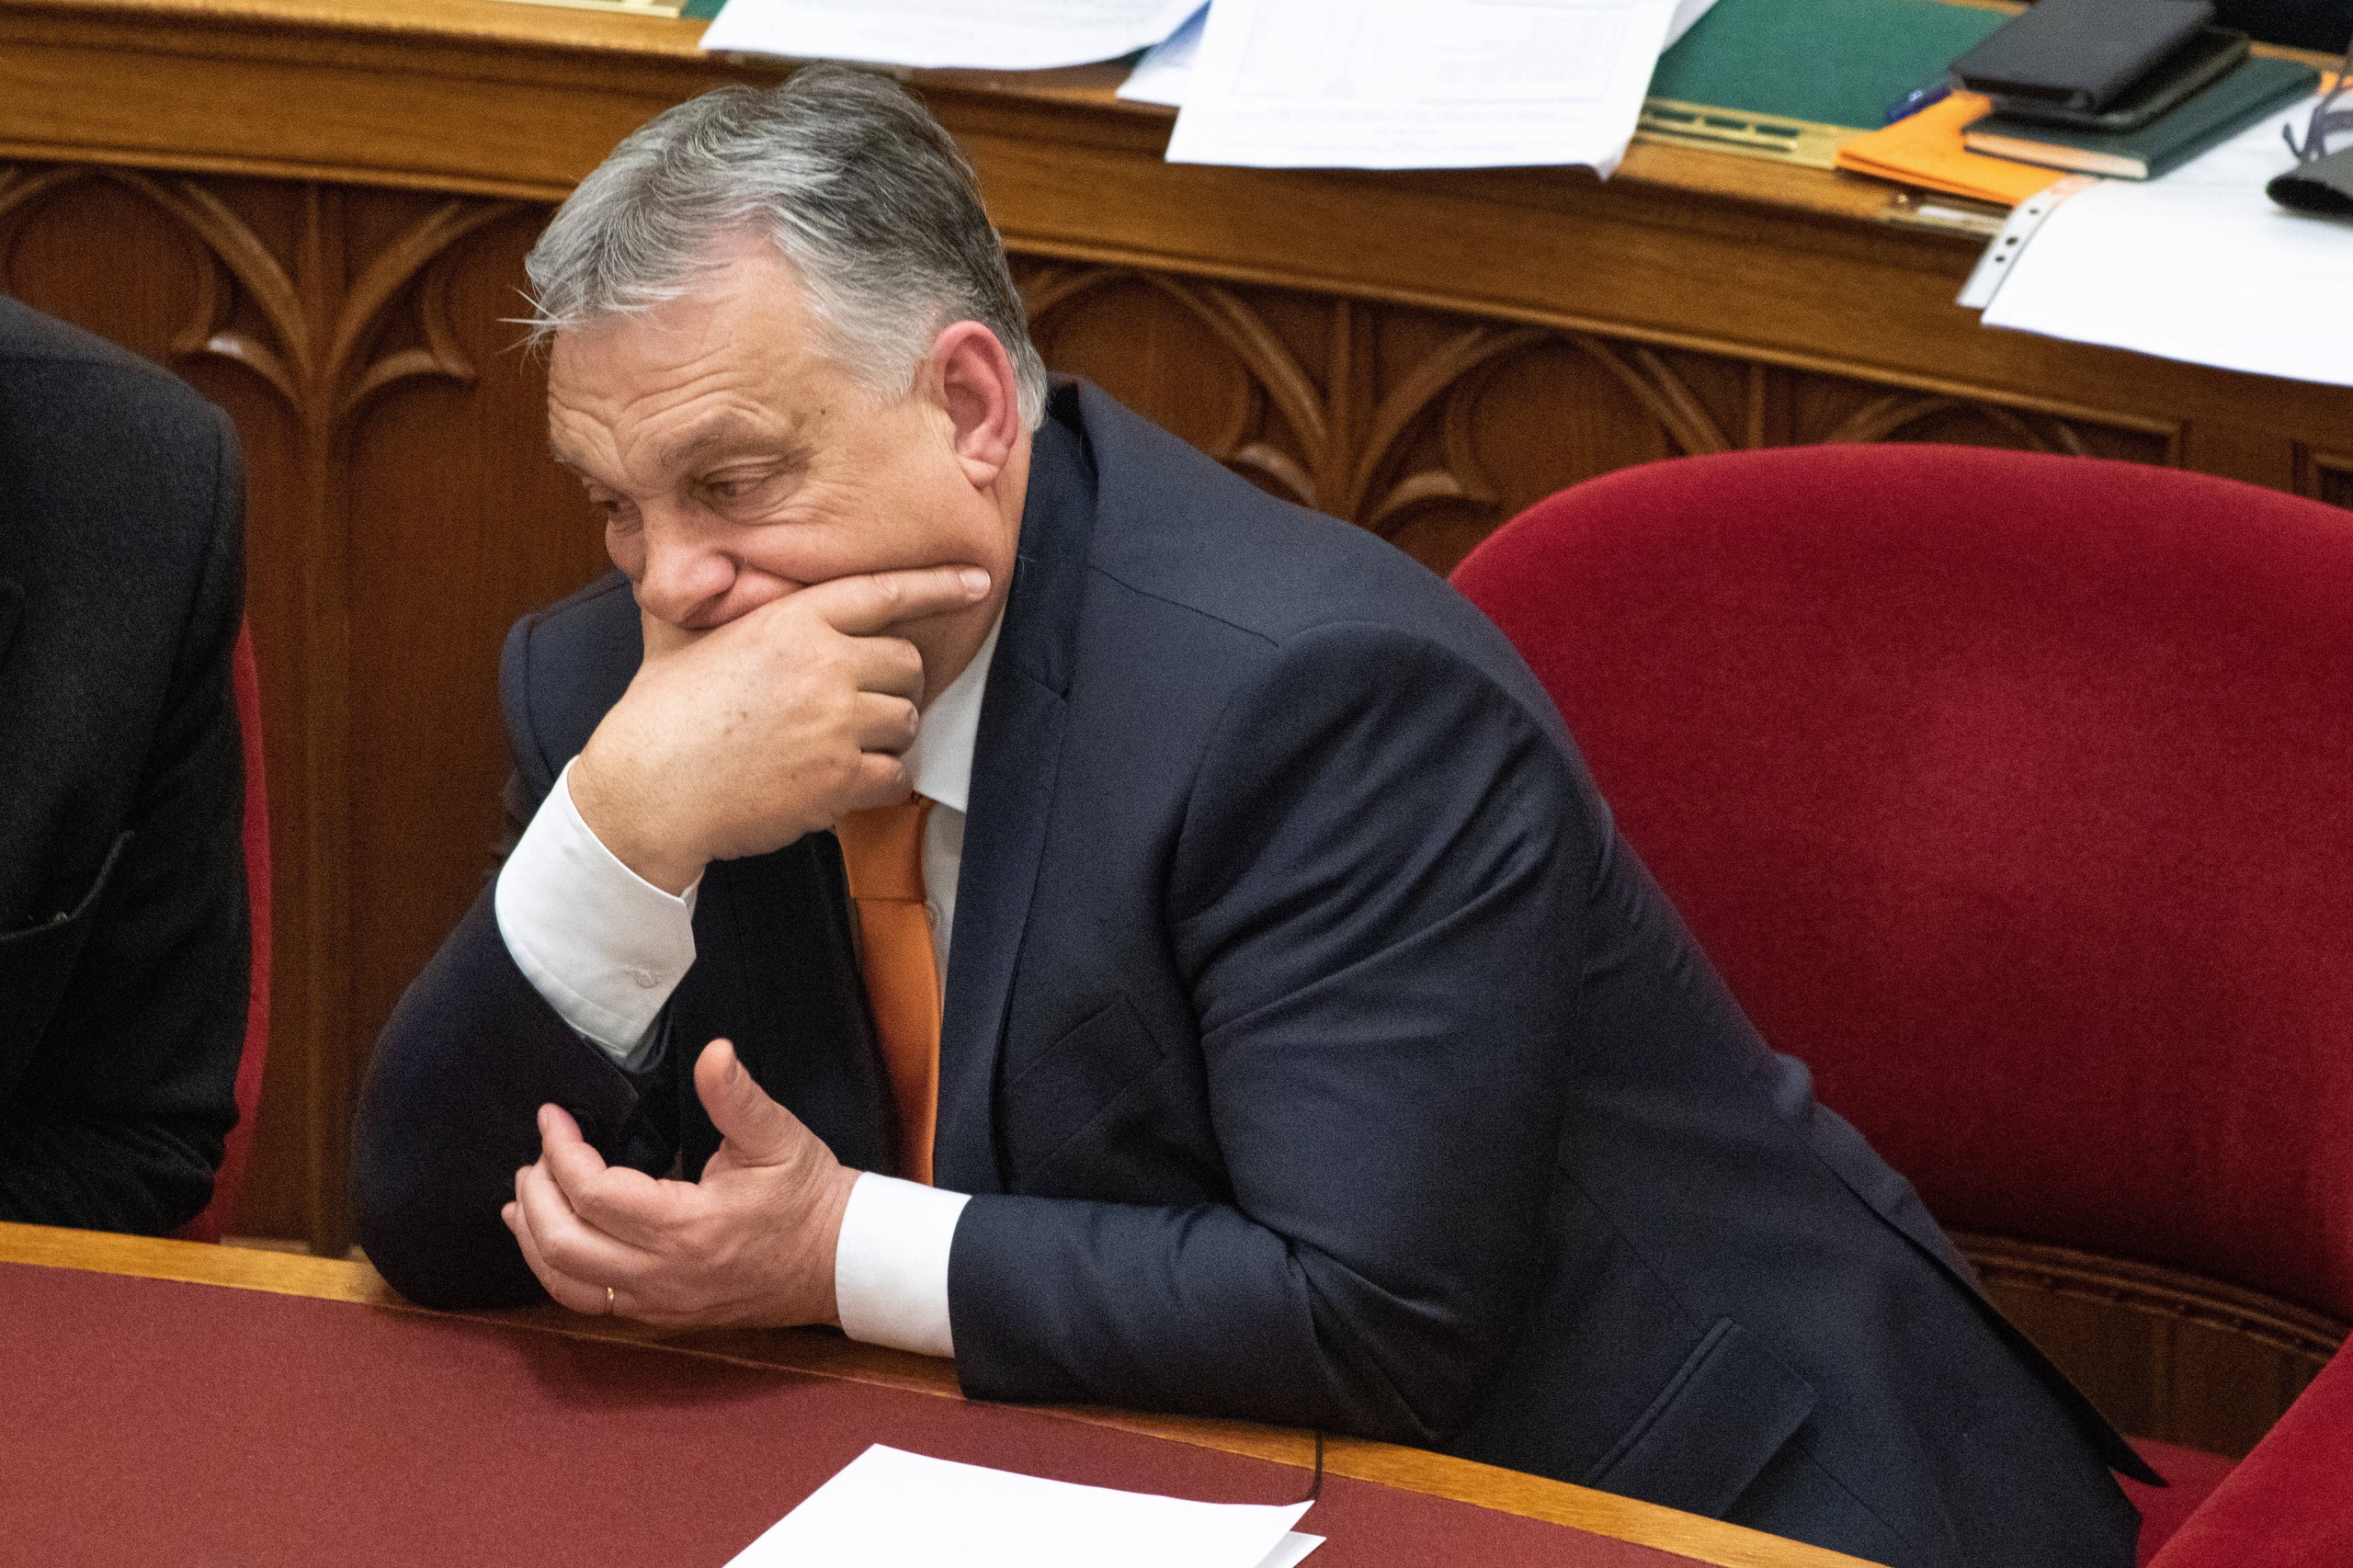 De Hongaarse premier Viktor Orban. De Europese Commissie en Hongarije lijken het eens te zijn over het vrijgeven van miljarden aan EU-subisidies.